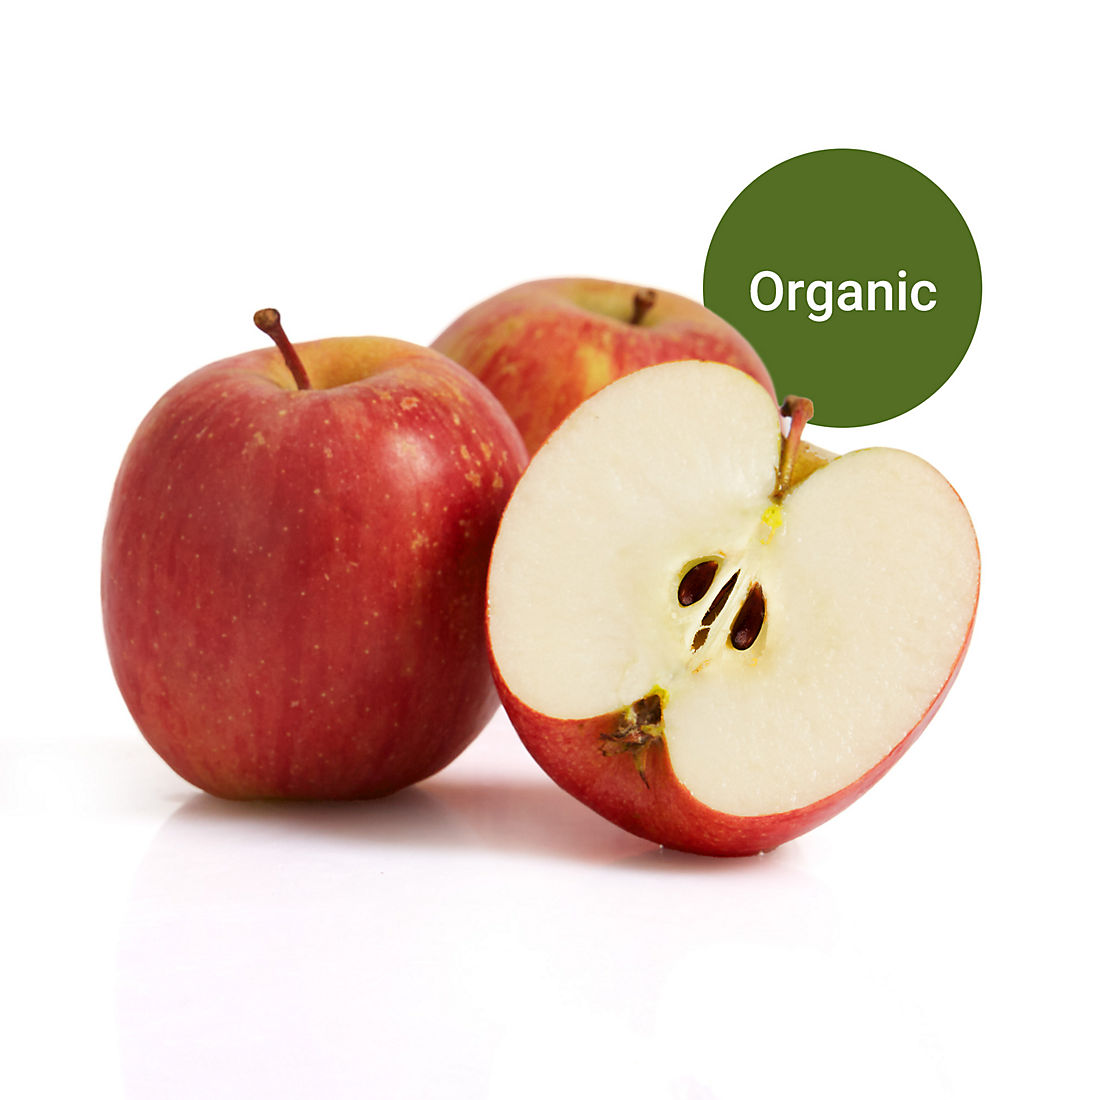 Fuji Apples, 3 lbs, organic